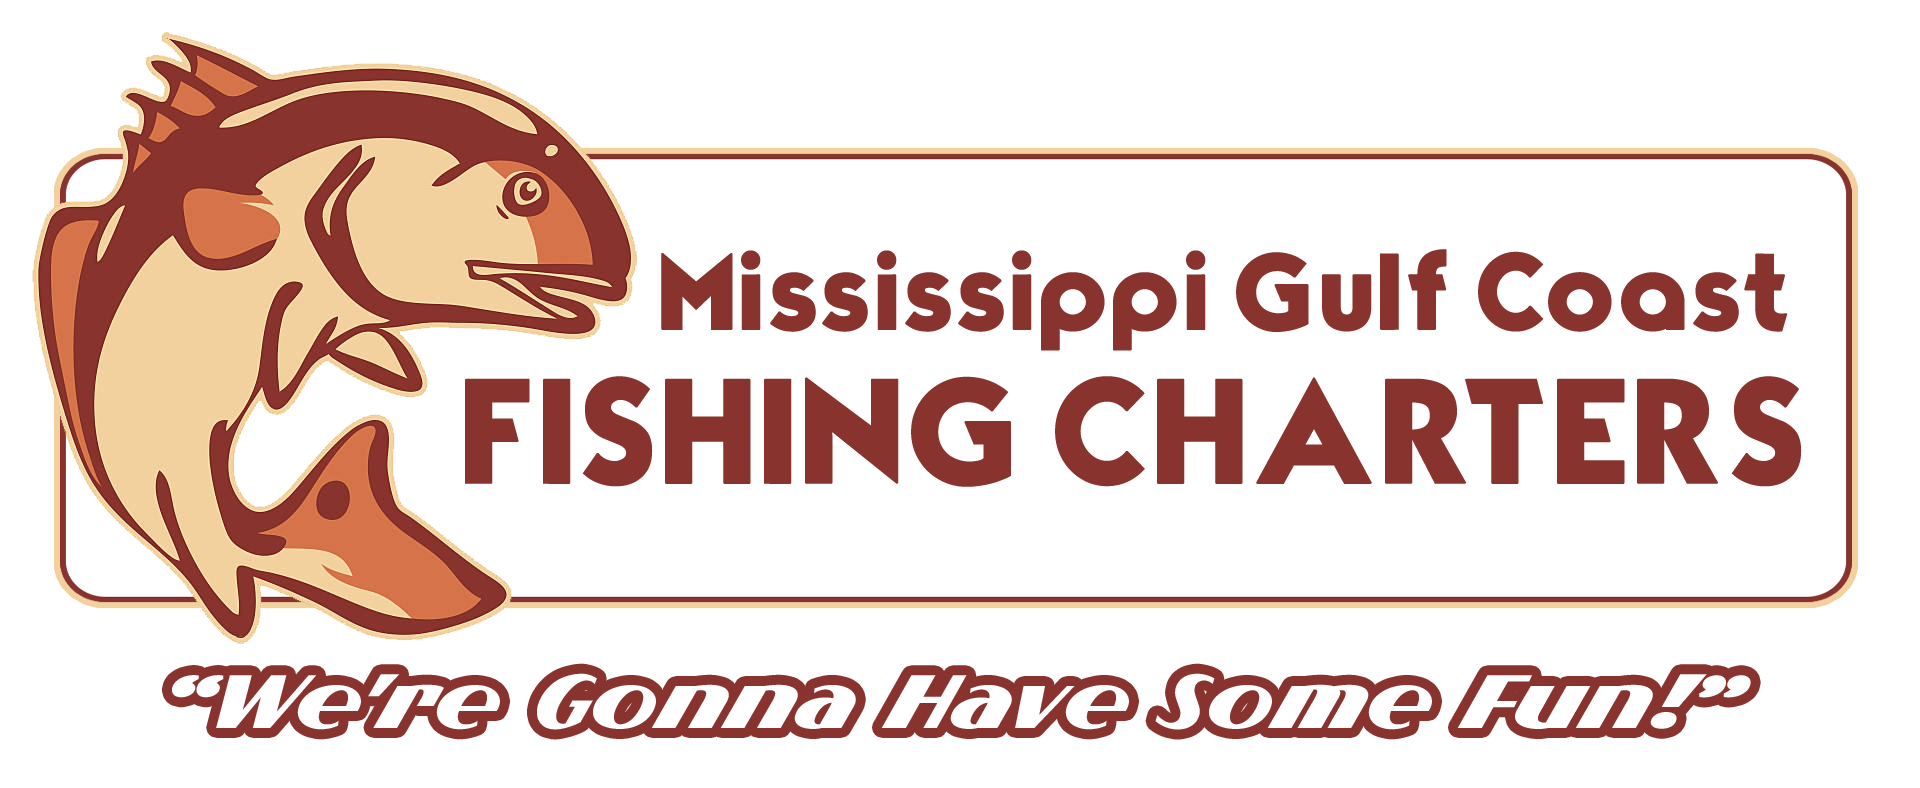 FAQ's - Mississippi Gulf Coast Fishing Charters